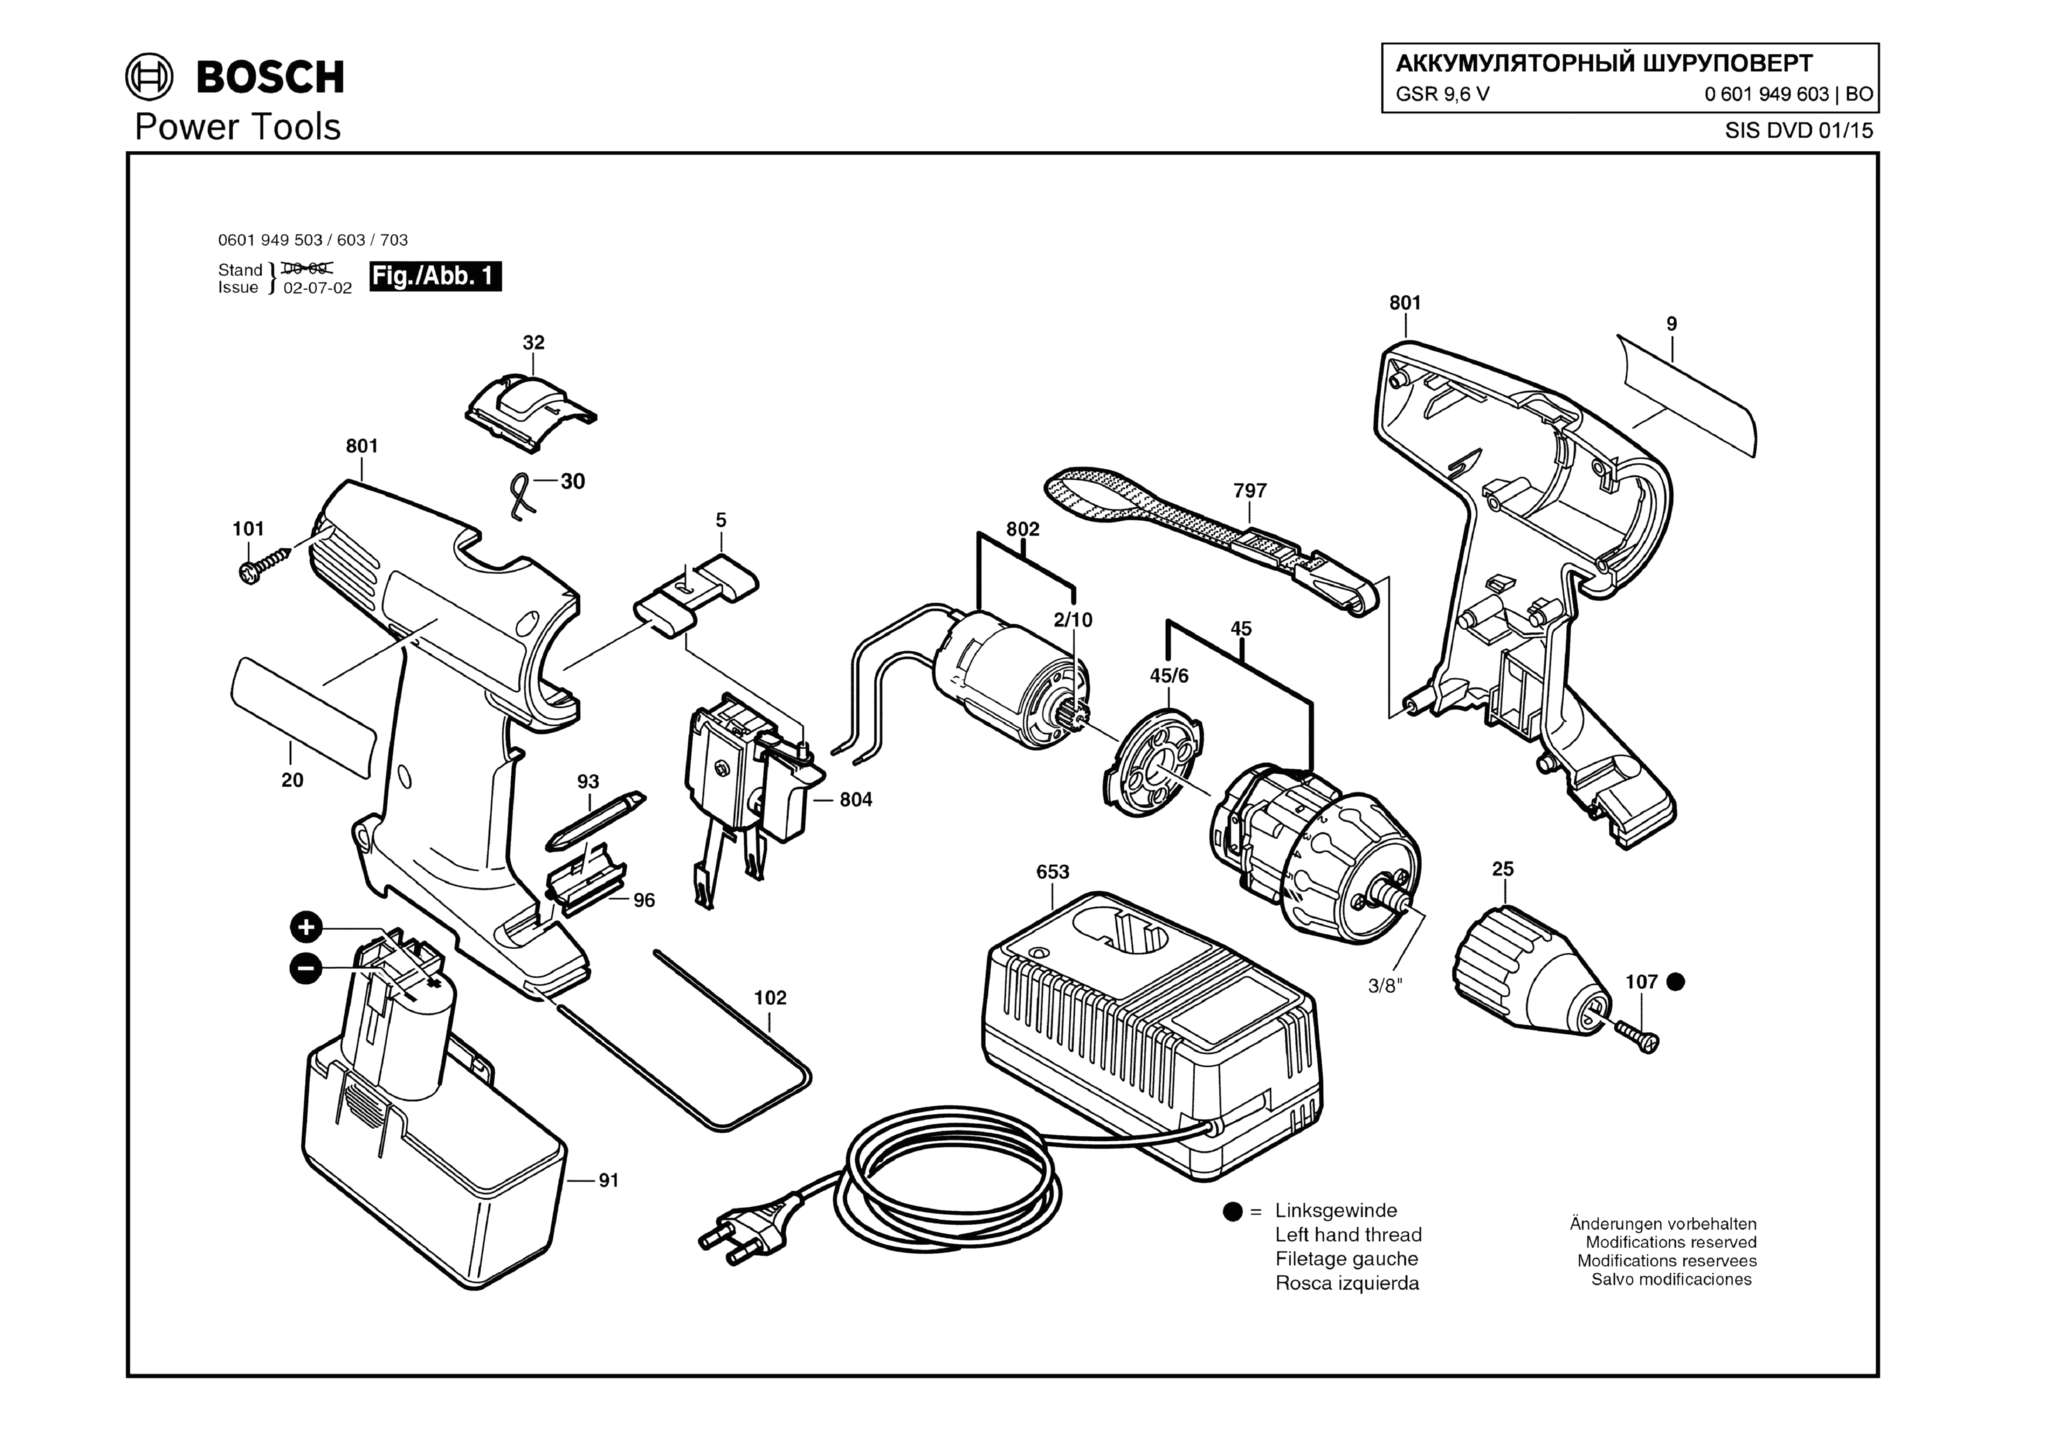 Запчасти, схема и деталировка Bosch GSR 9,6 V (ТИП 0601949603)